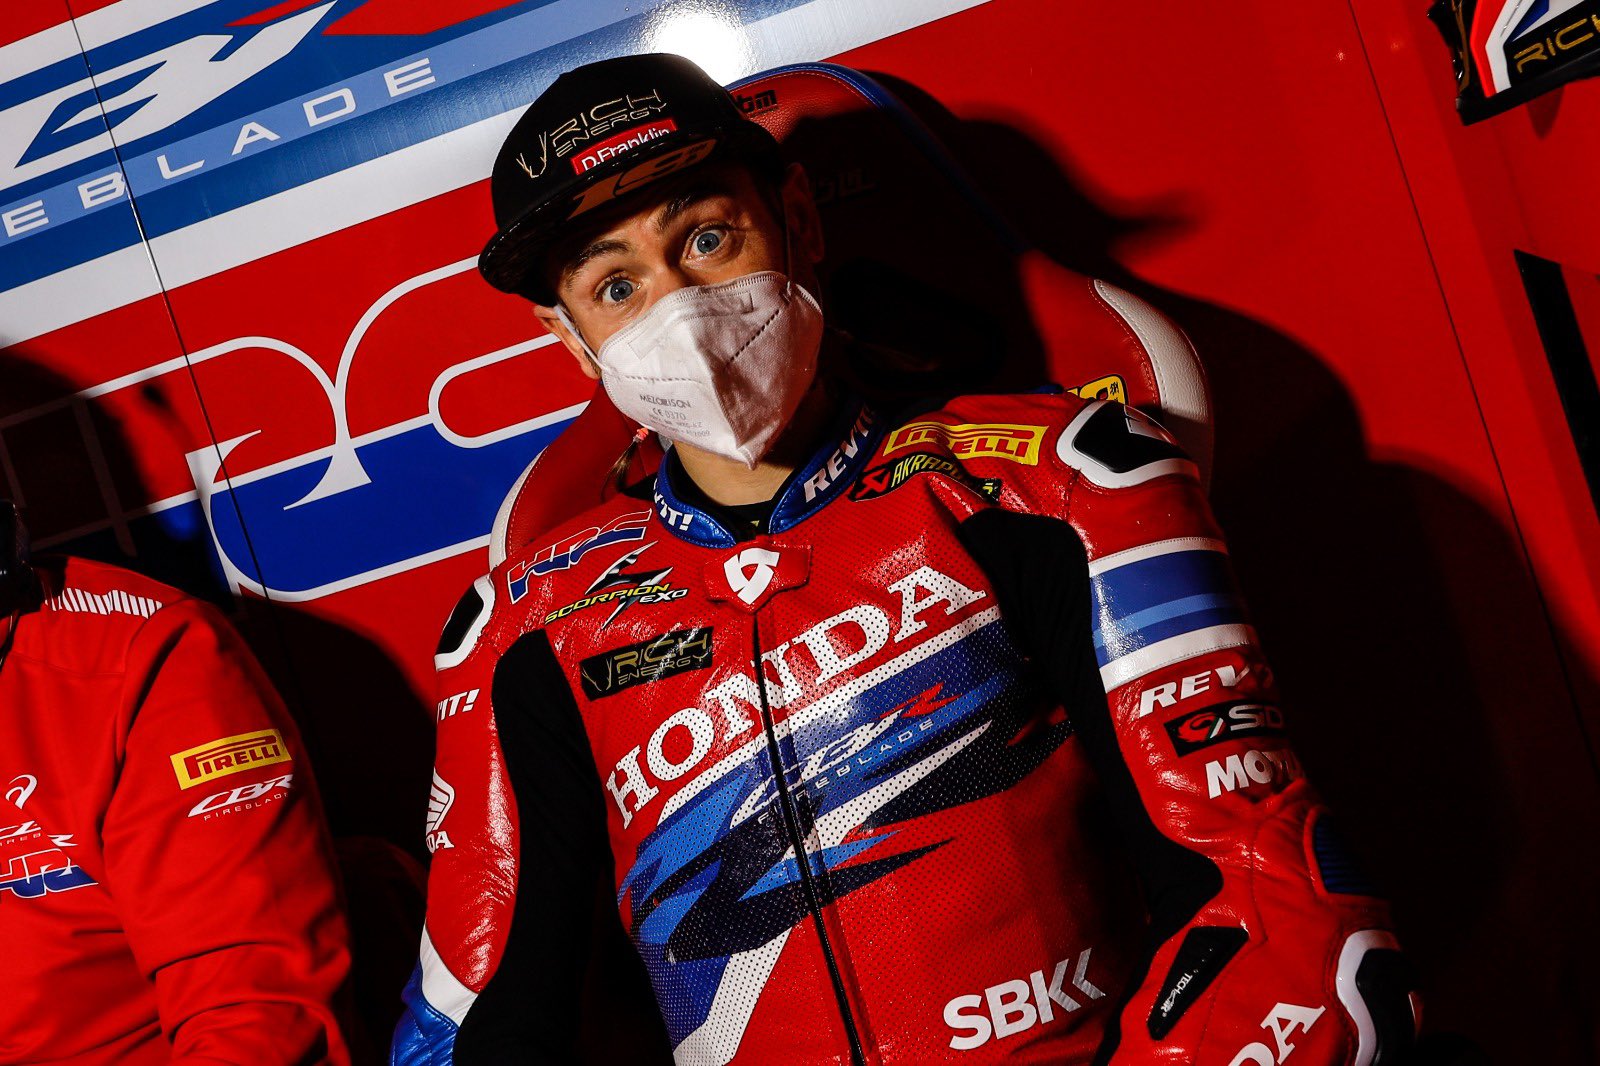 WSBK Superbike 2022 : qui voudra de la décevante Honda après Bautista ? Deux pilotes répondent